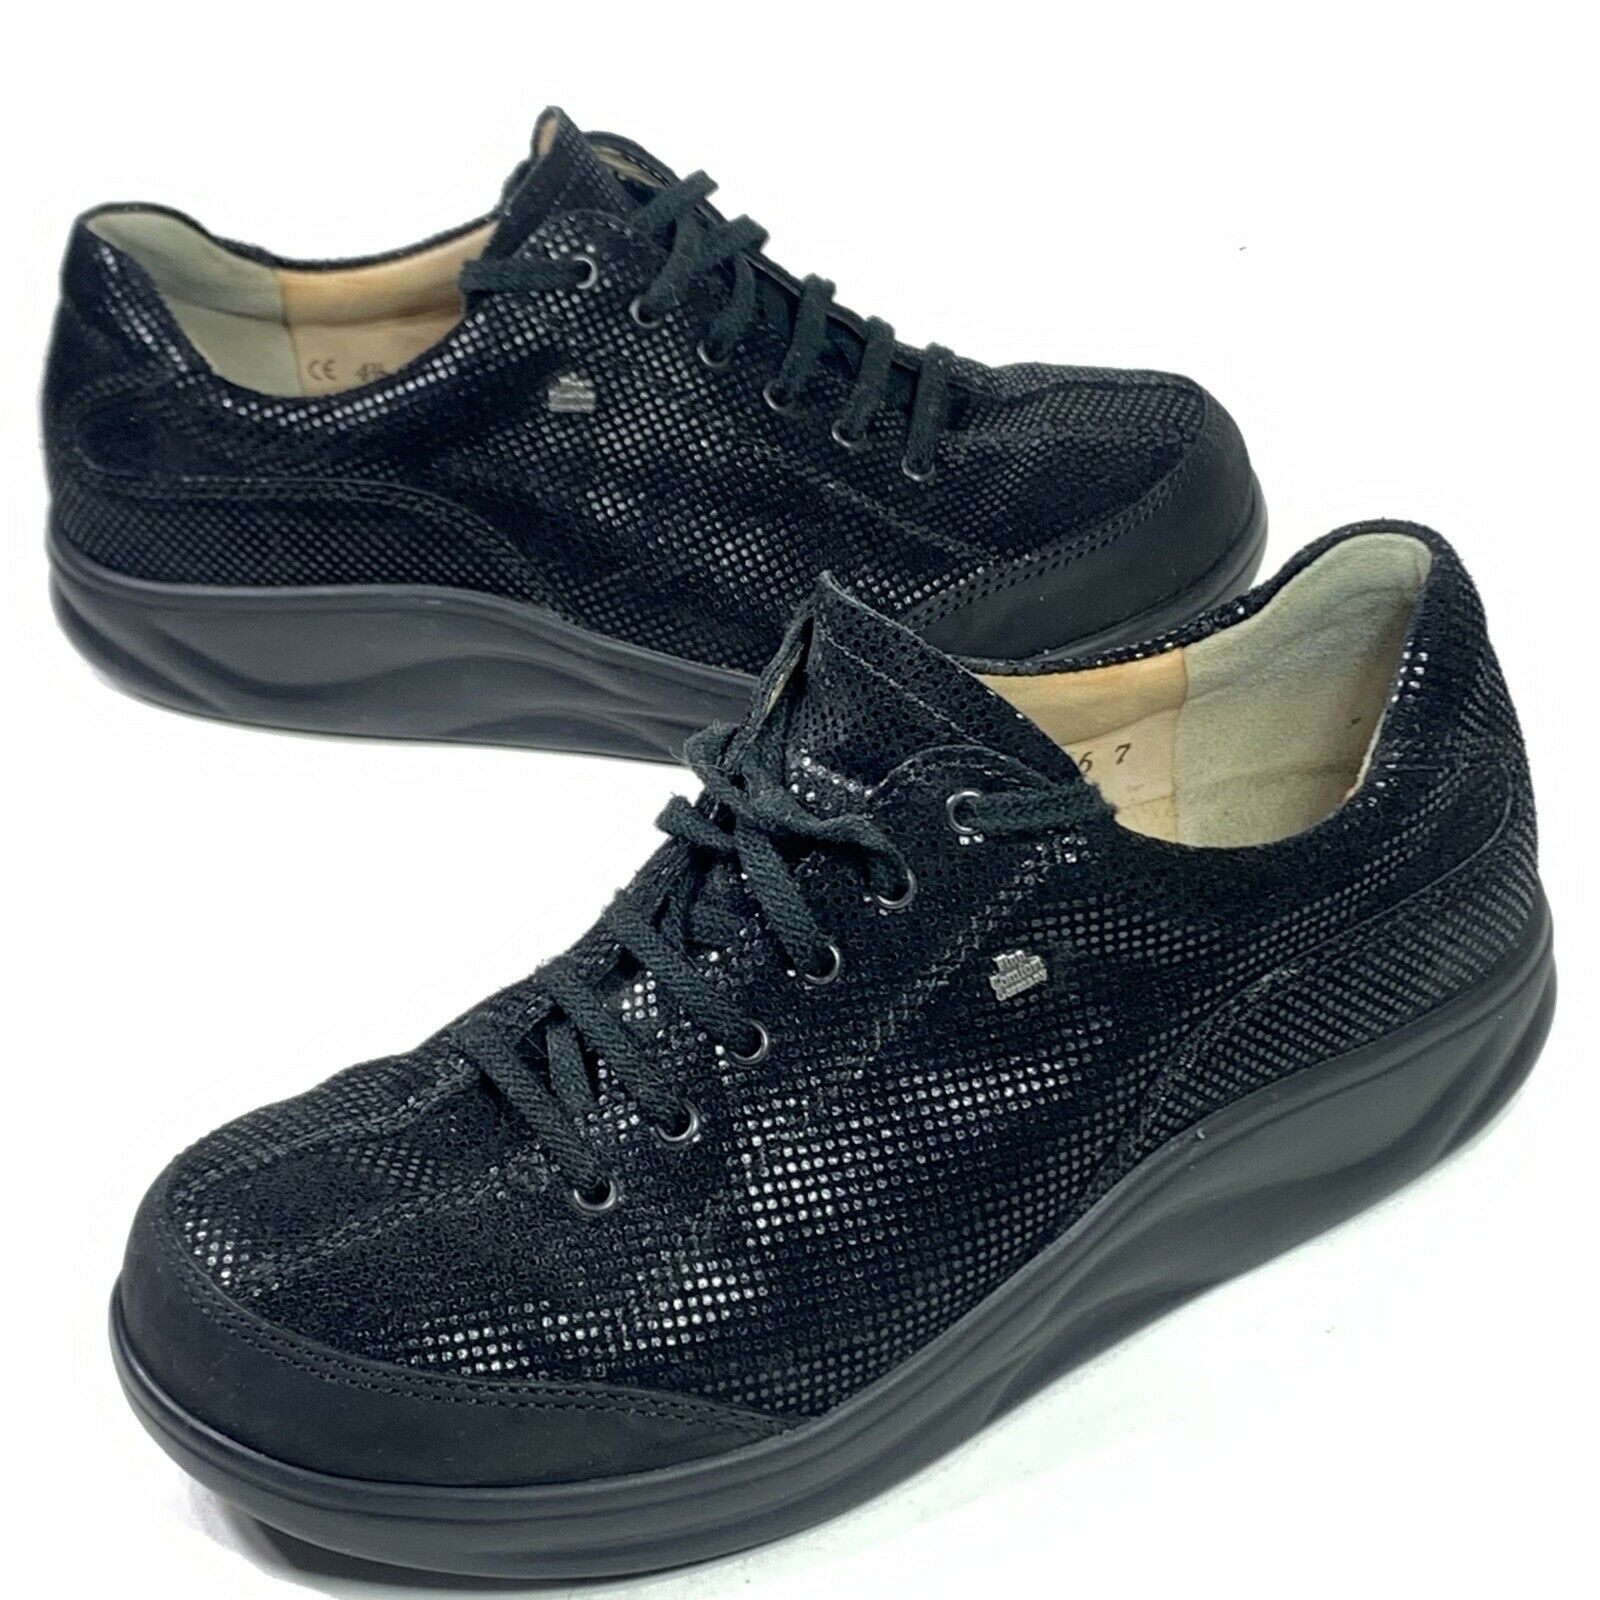 Finn Comfort Germany Soho Lace Up Walking Shoes Sneaker Women’s 7 / UK 4.5